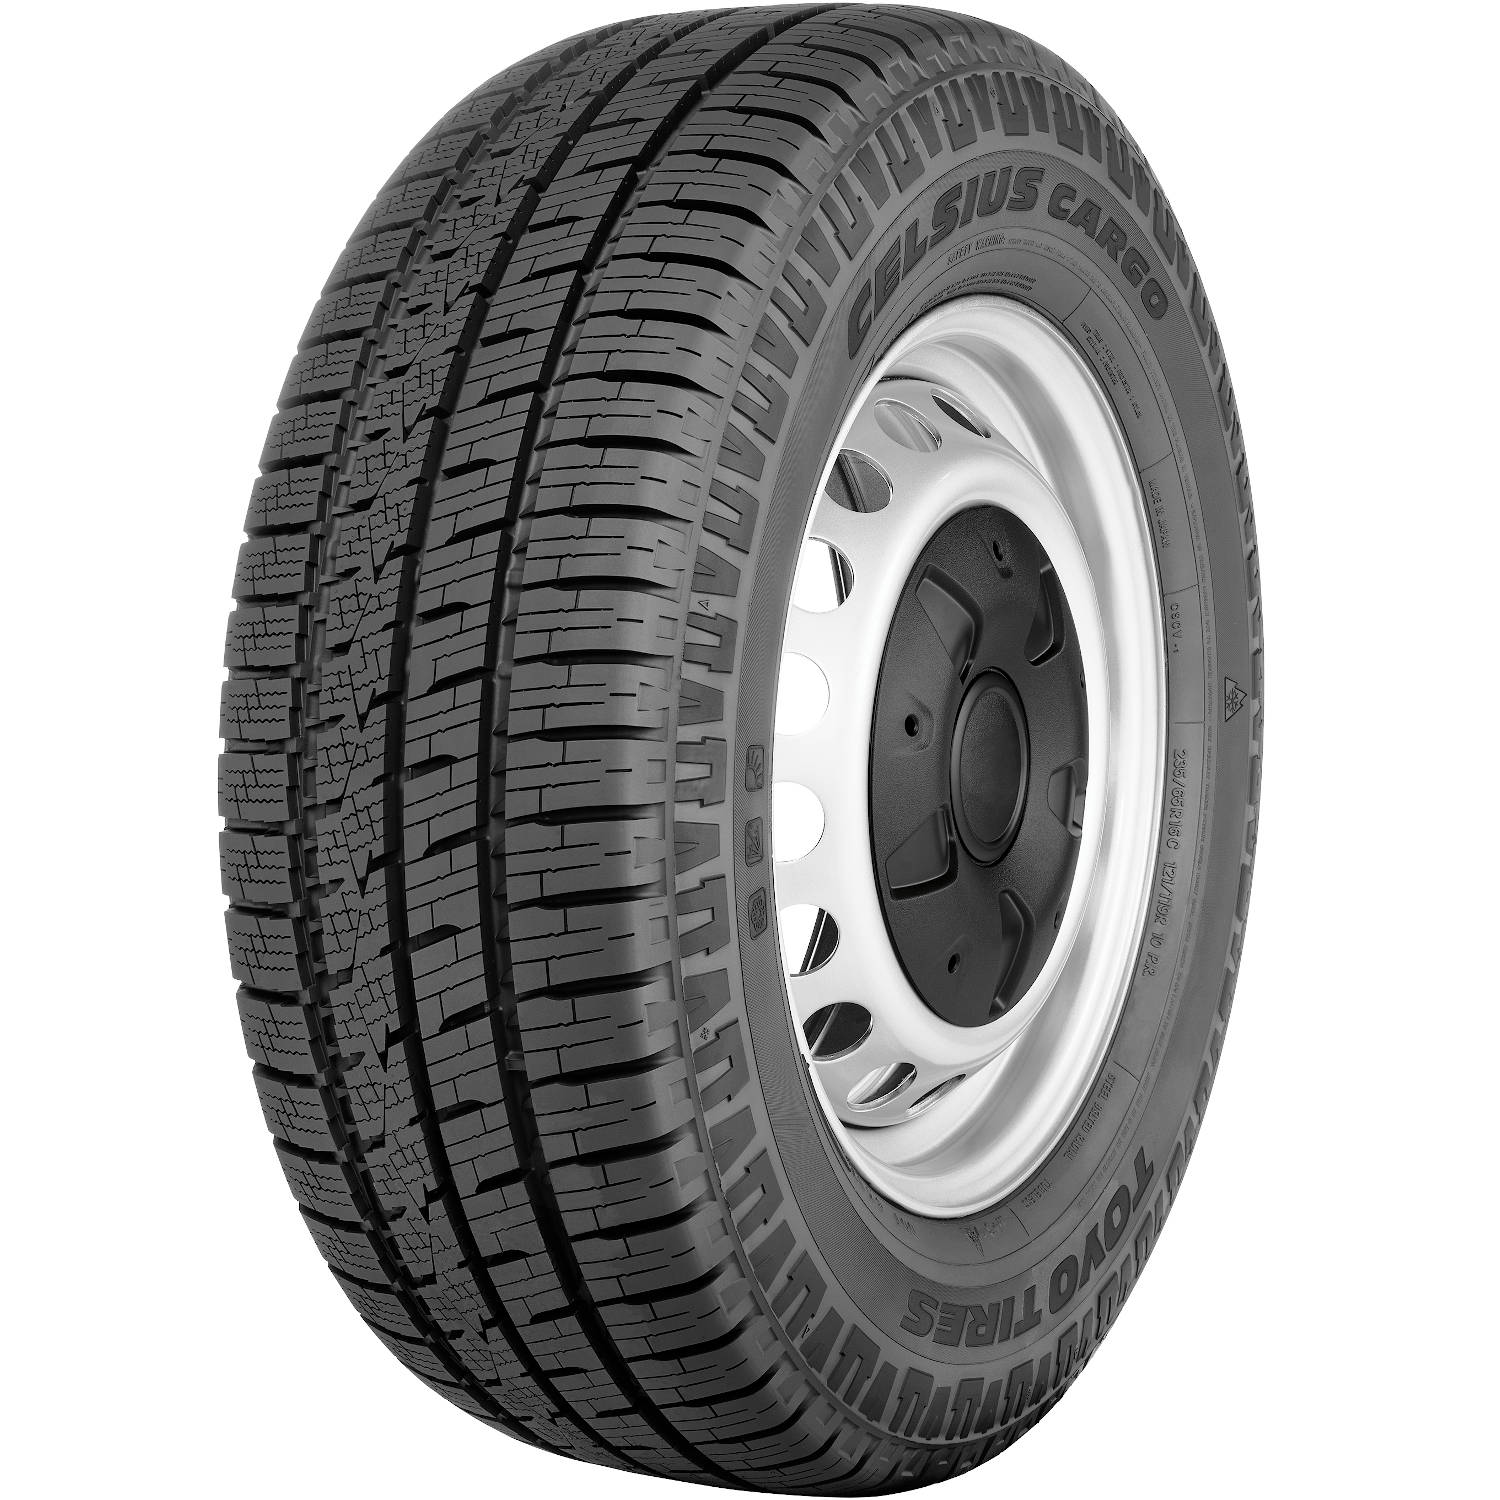 TOYO TIRES CELSIUS CARGO 205/75R16C (28.1X8.1R 16) Tires